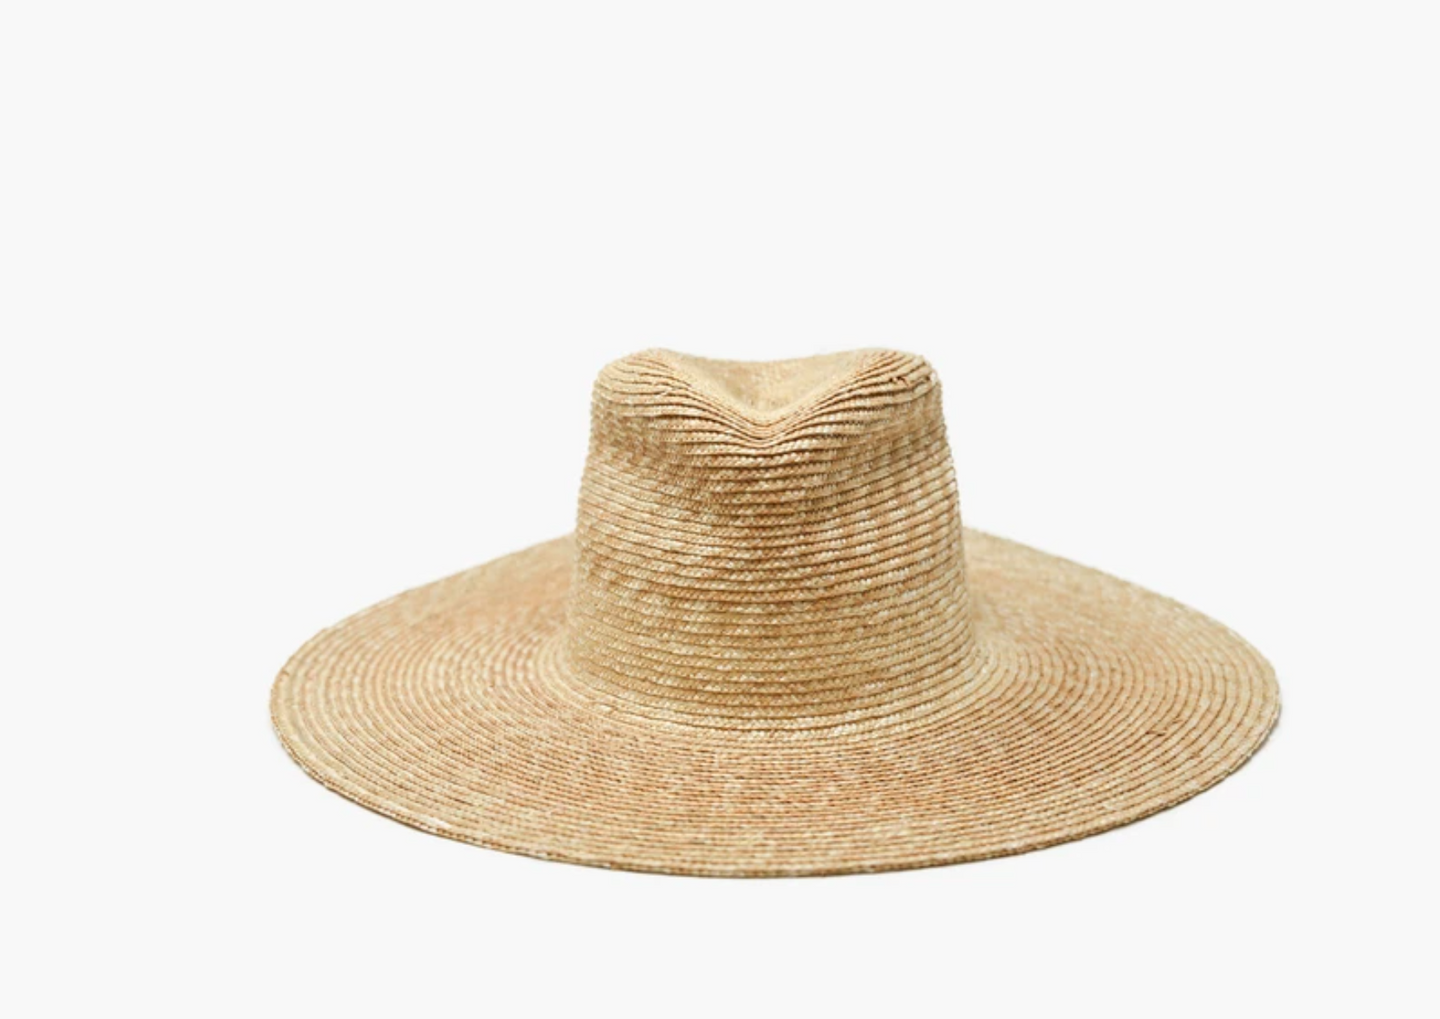 Ipanama Straw Hat